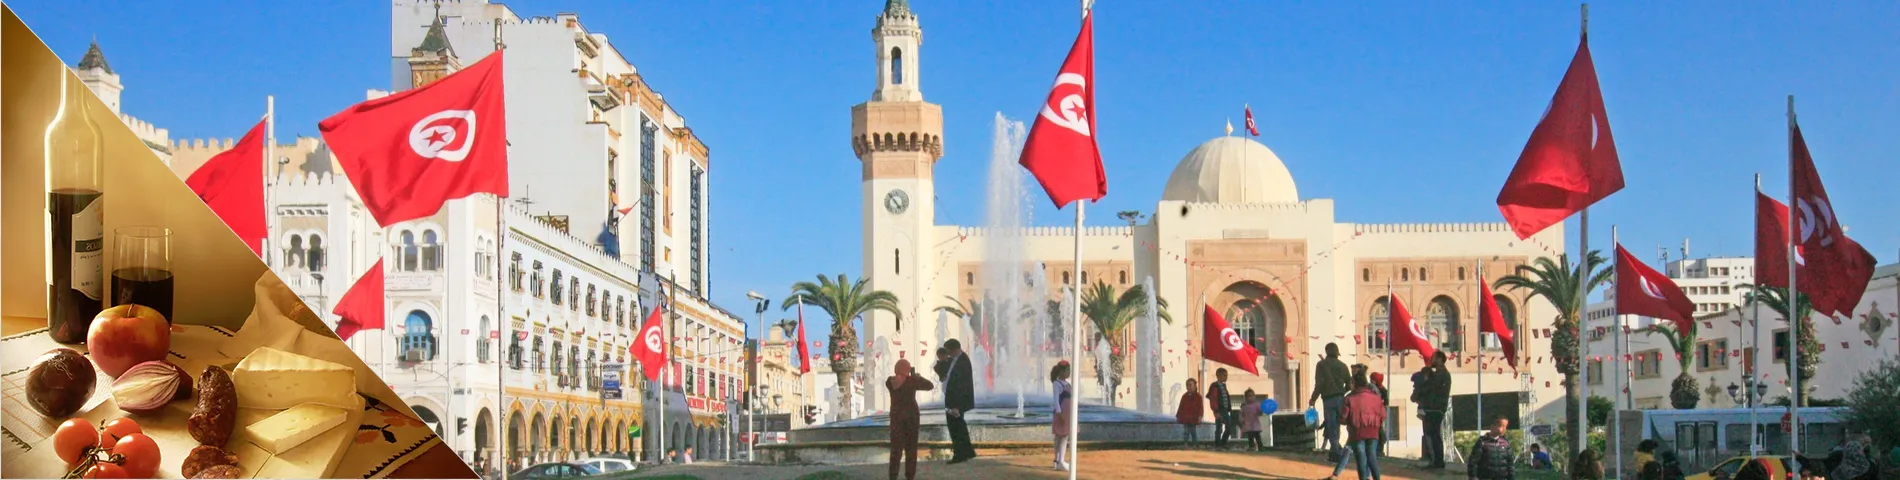 Sfax - Arabčina a kultúra